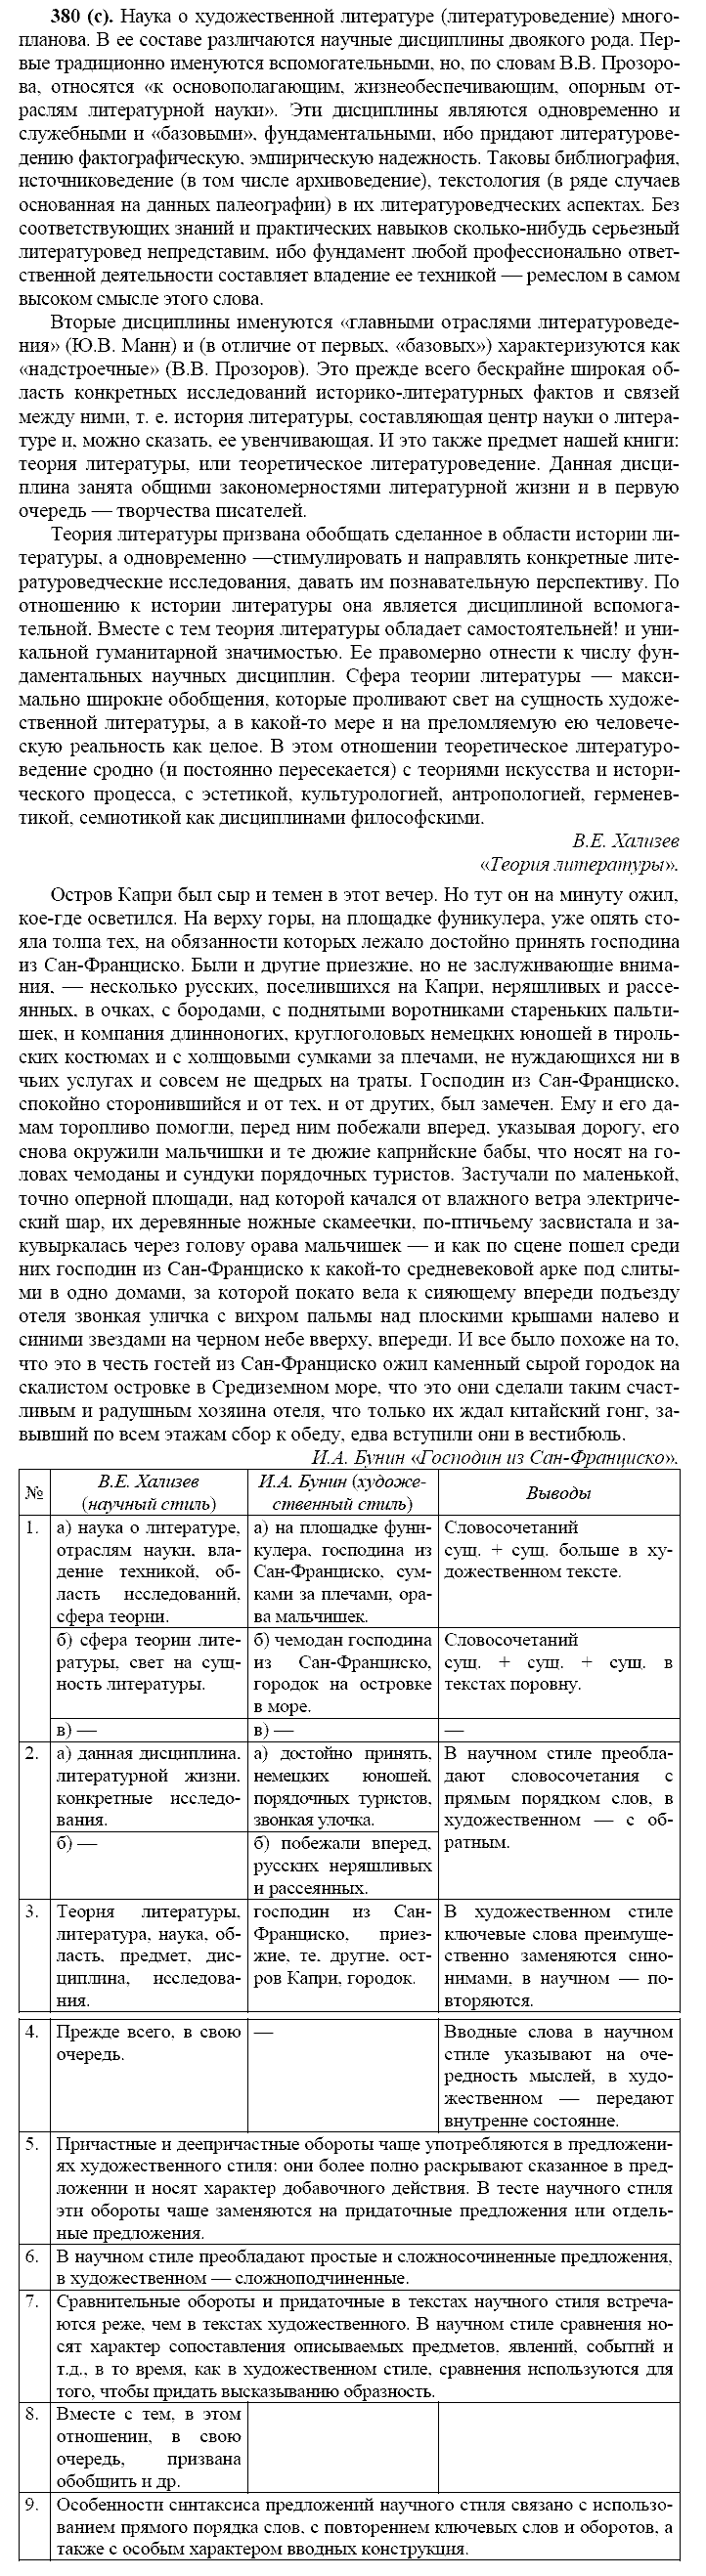 Русский язык, 11 класс, Власенков, Рыбченков, 2009-2014, задание: 380 (с)